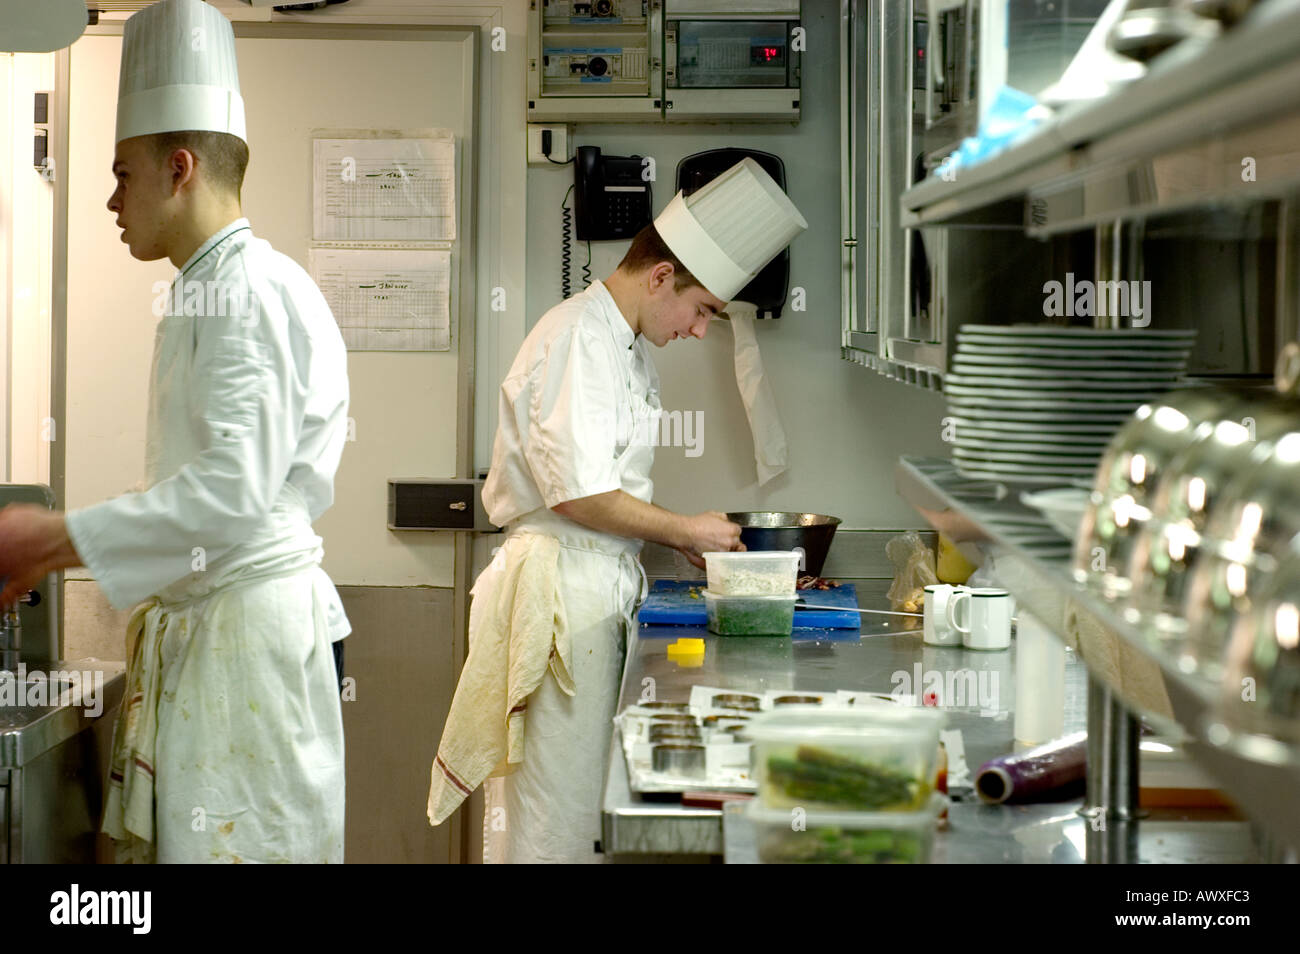 Paris Francia, alta cocina francesa, Restaurante Le 'Jules Verne' Chefs Male Trabajando en cocina profesional, restaurante de lujo Foto de stock